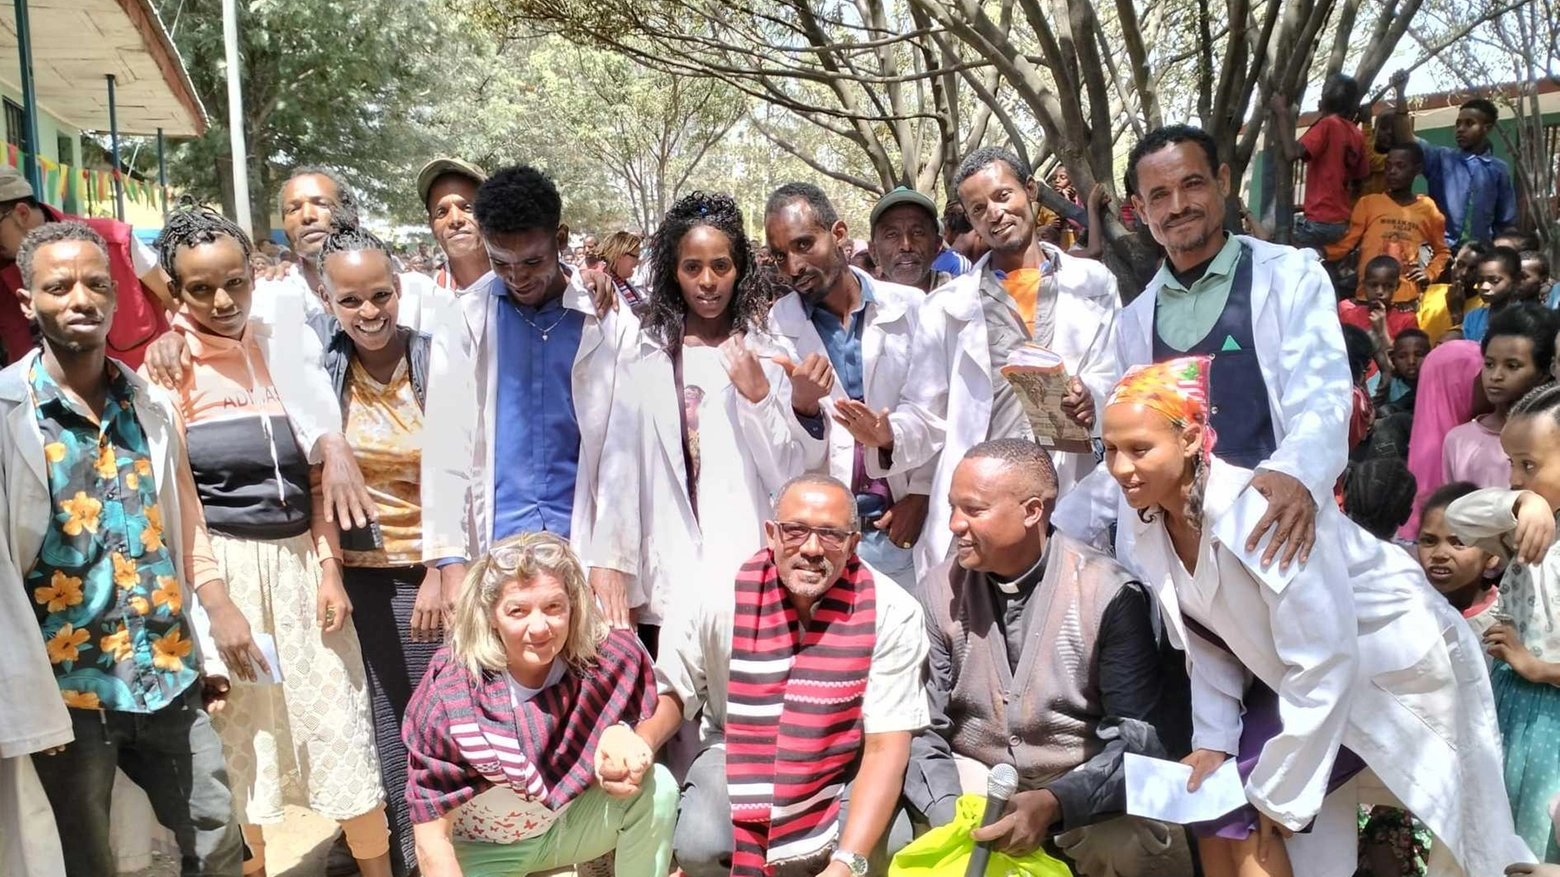 "Aiuti e sorrisi per gli amici etiopi"